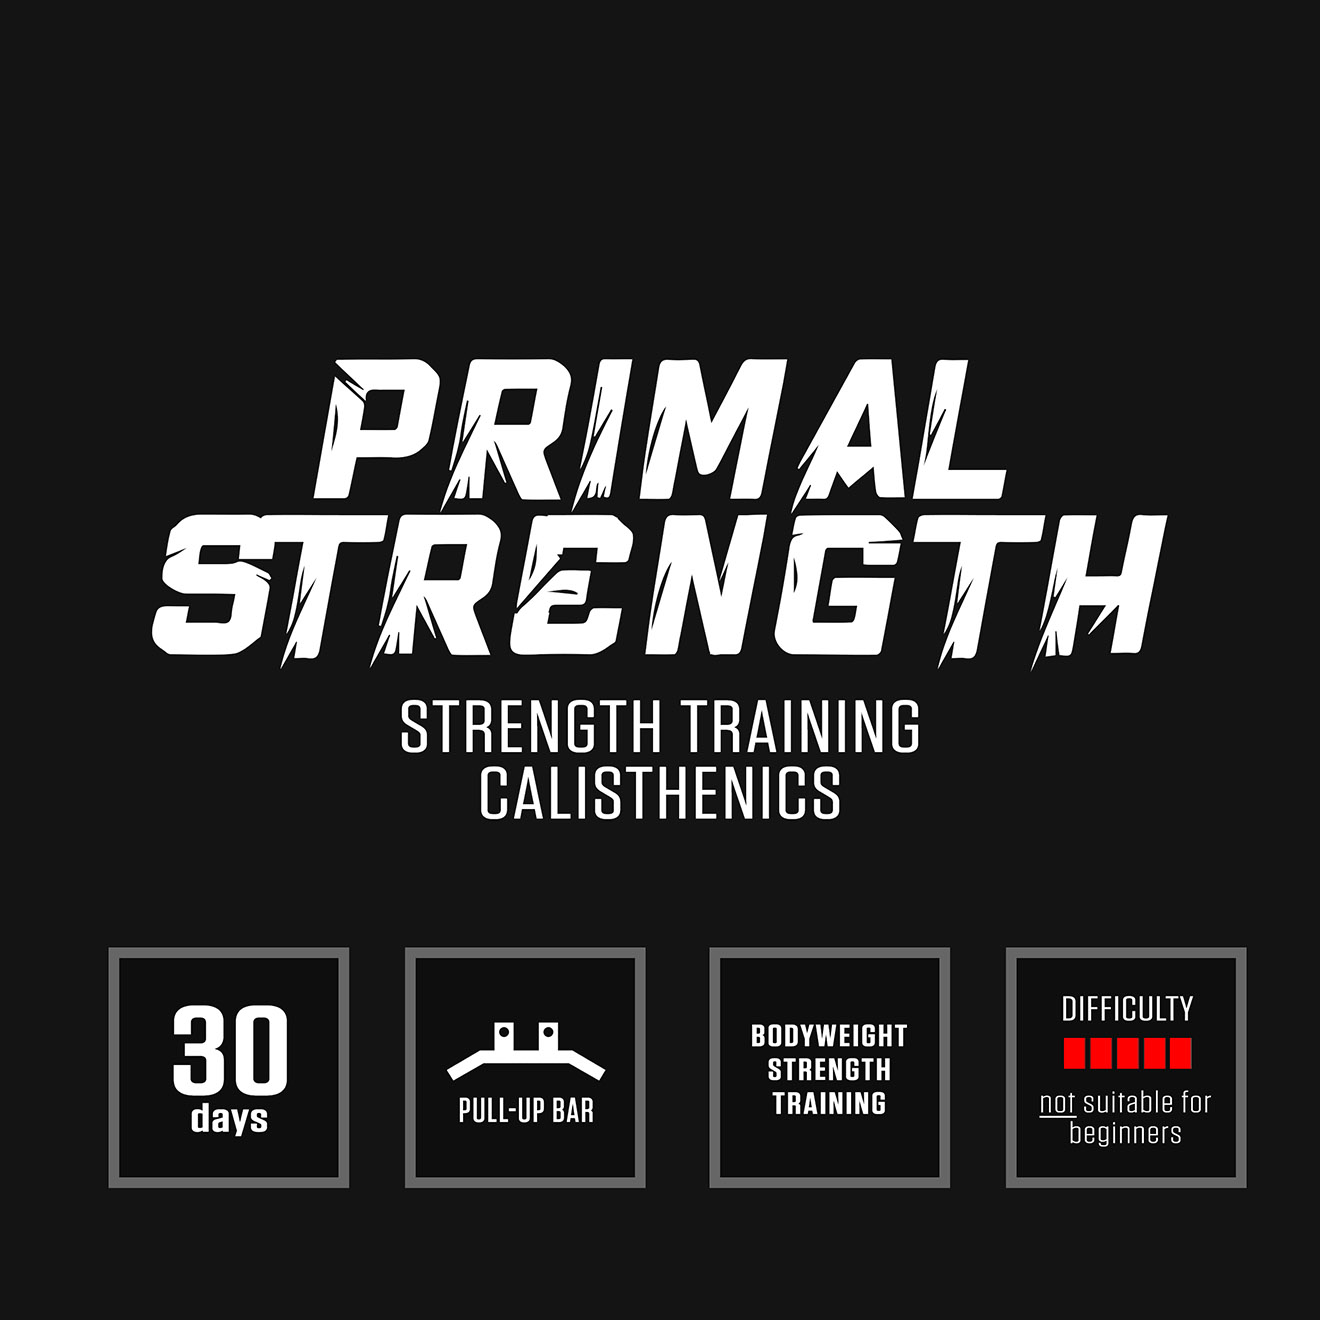 Primal Strength Program by DAREBEE